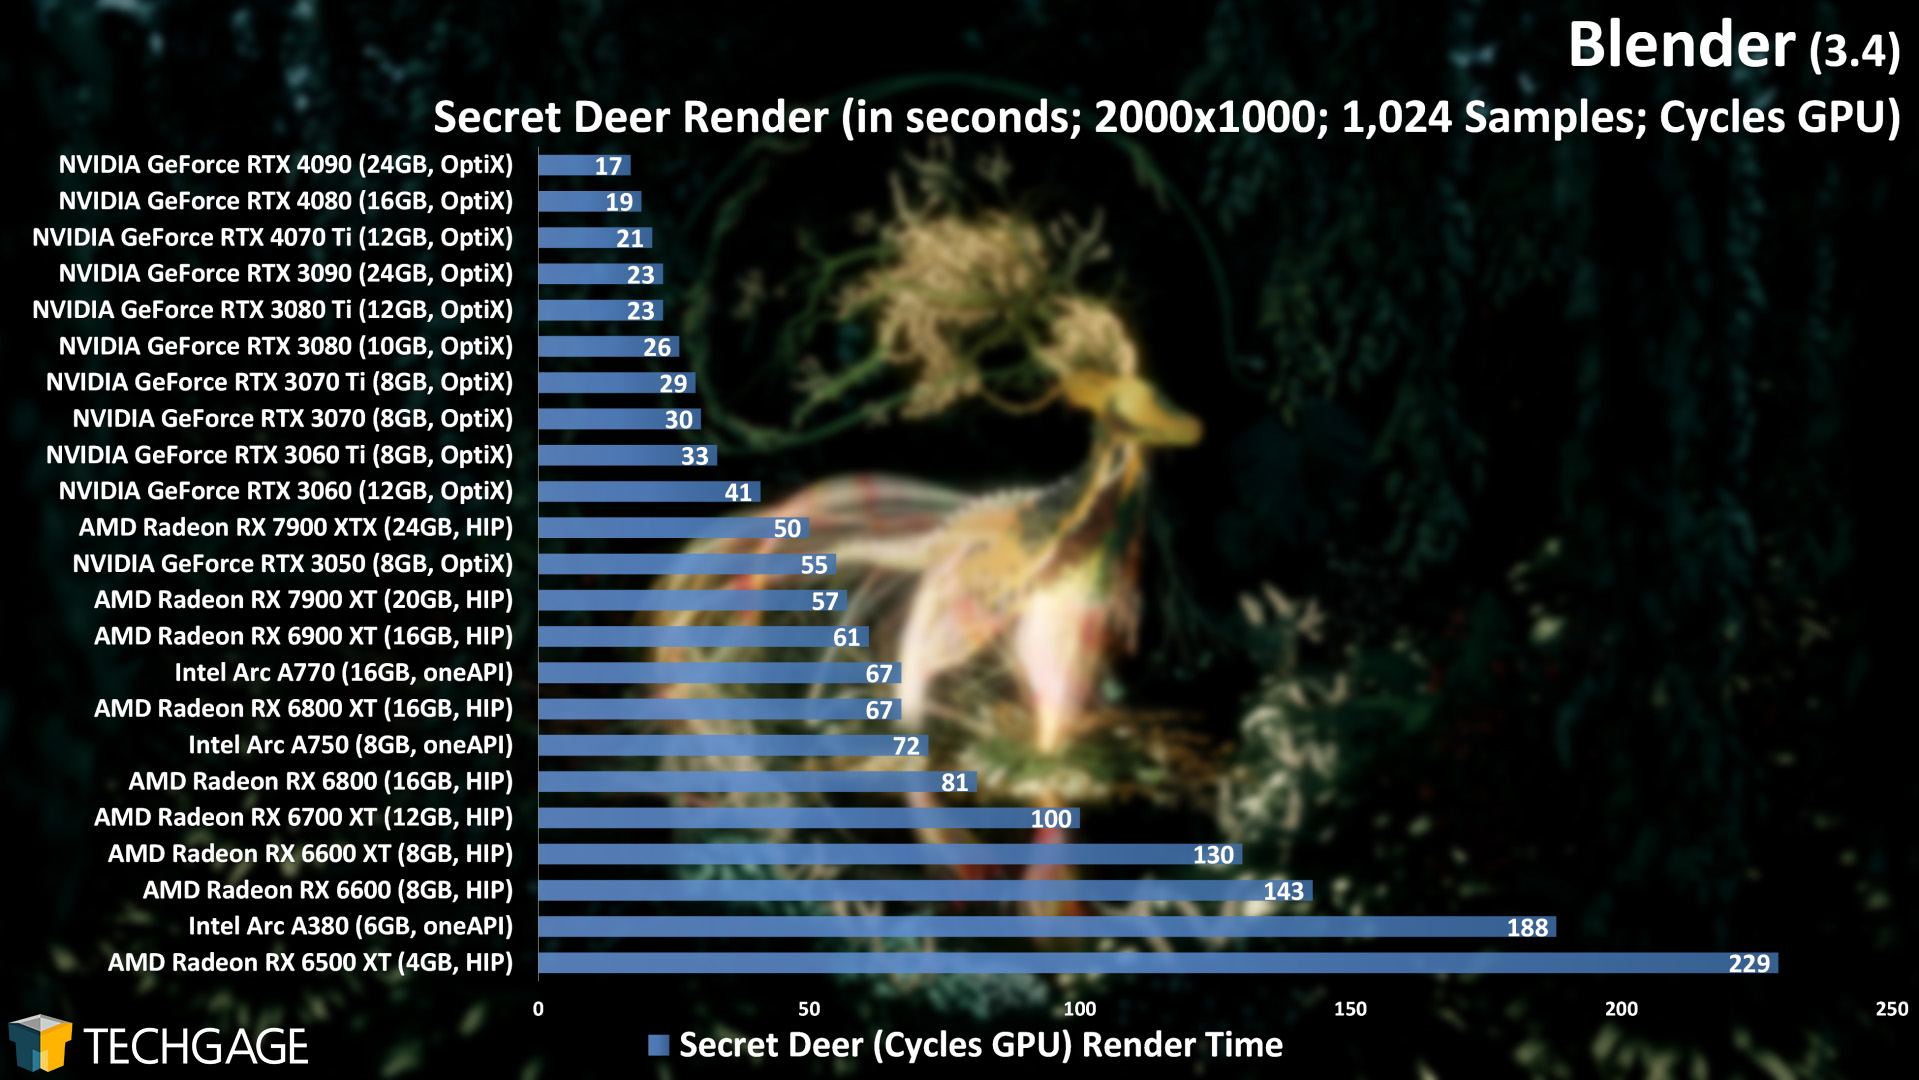 Blender - Cycles GPU Rendering Performance (Secret Deer)